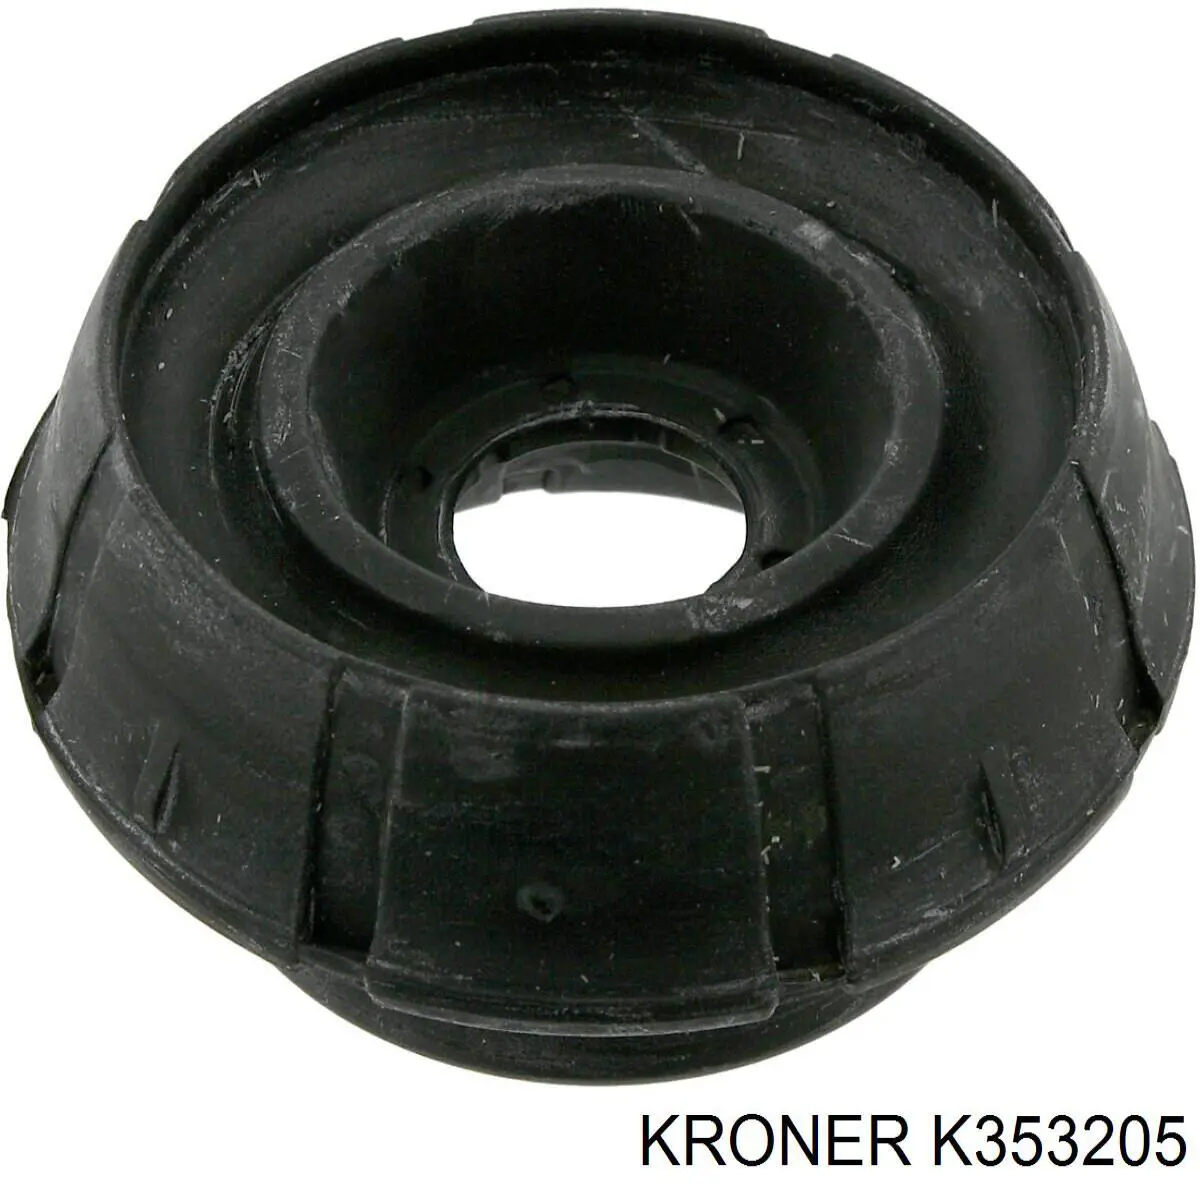 K353205 Kroner опора амортизатора переднего